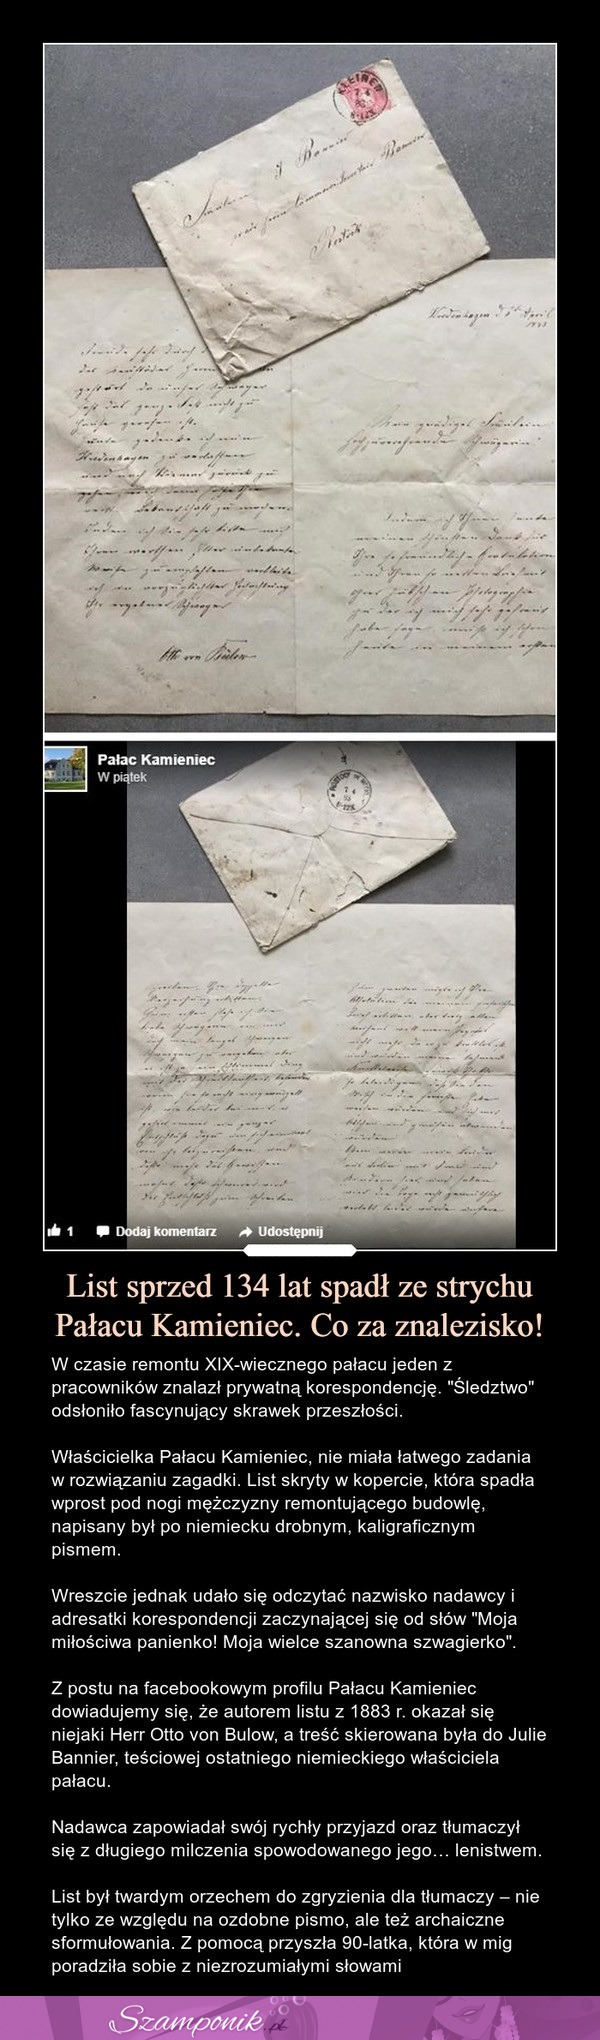 List sprzed 134 lat spadł ze strychu Pałacu Kamieniec. Co za znalezisko!